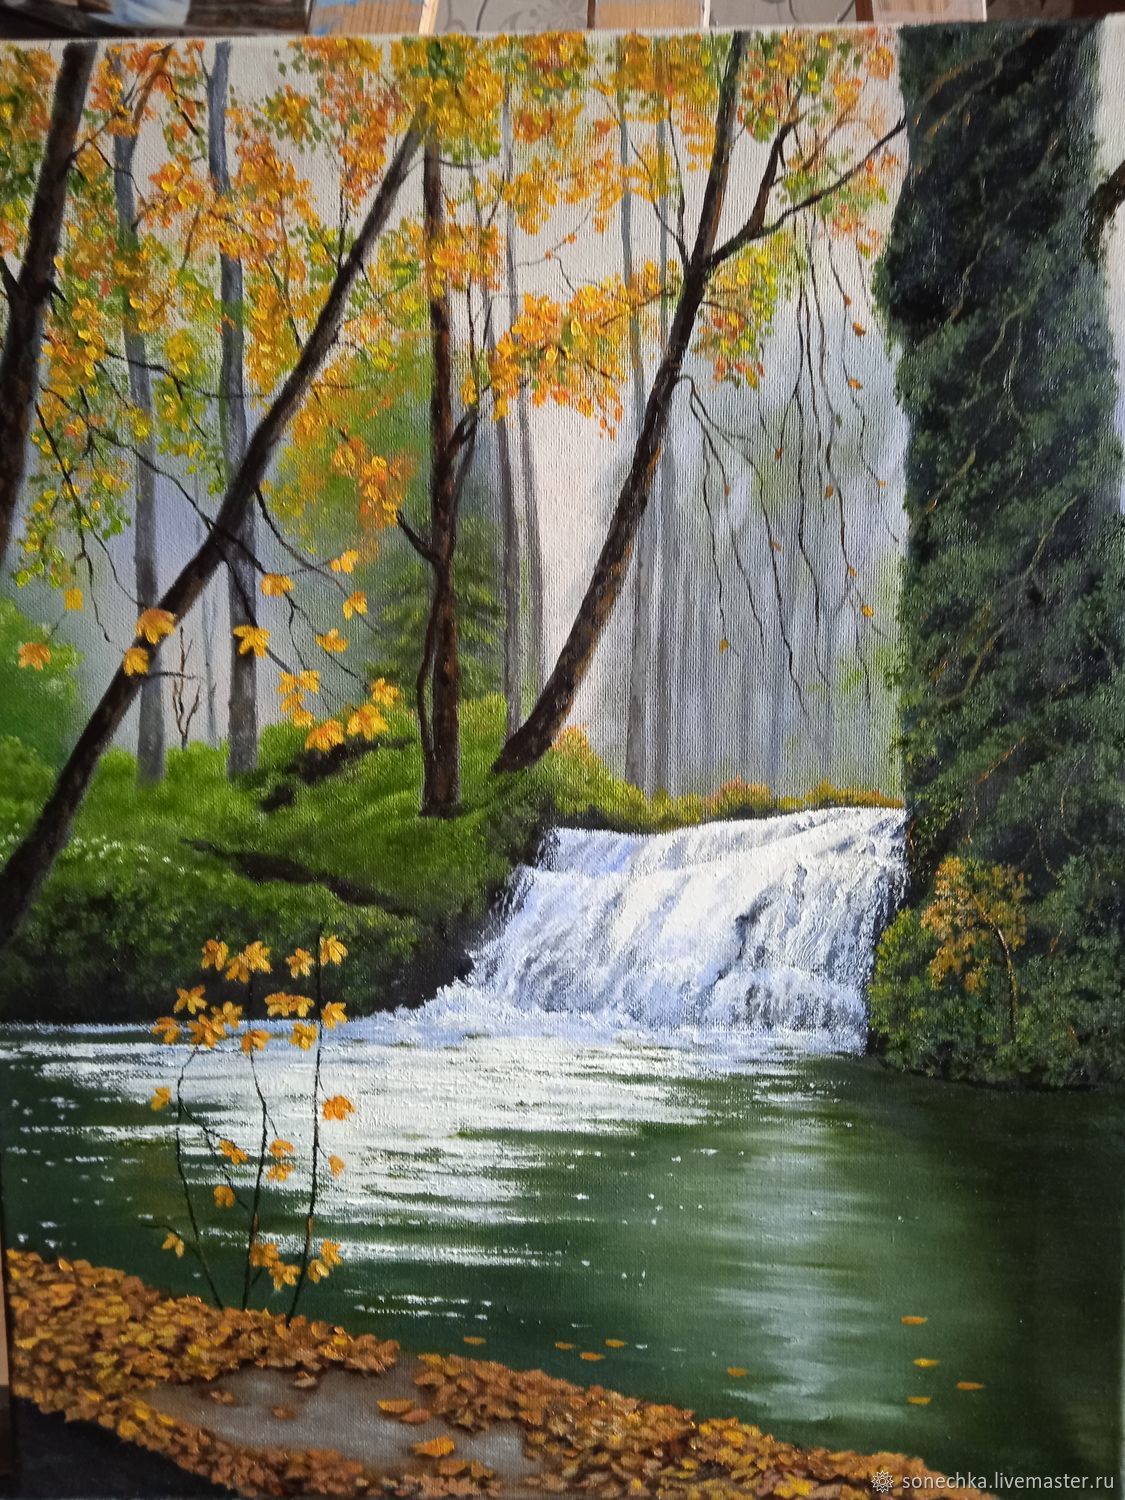  Лесной водопад, Картины, Солнечногорск,  Фото №1